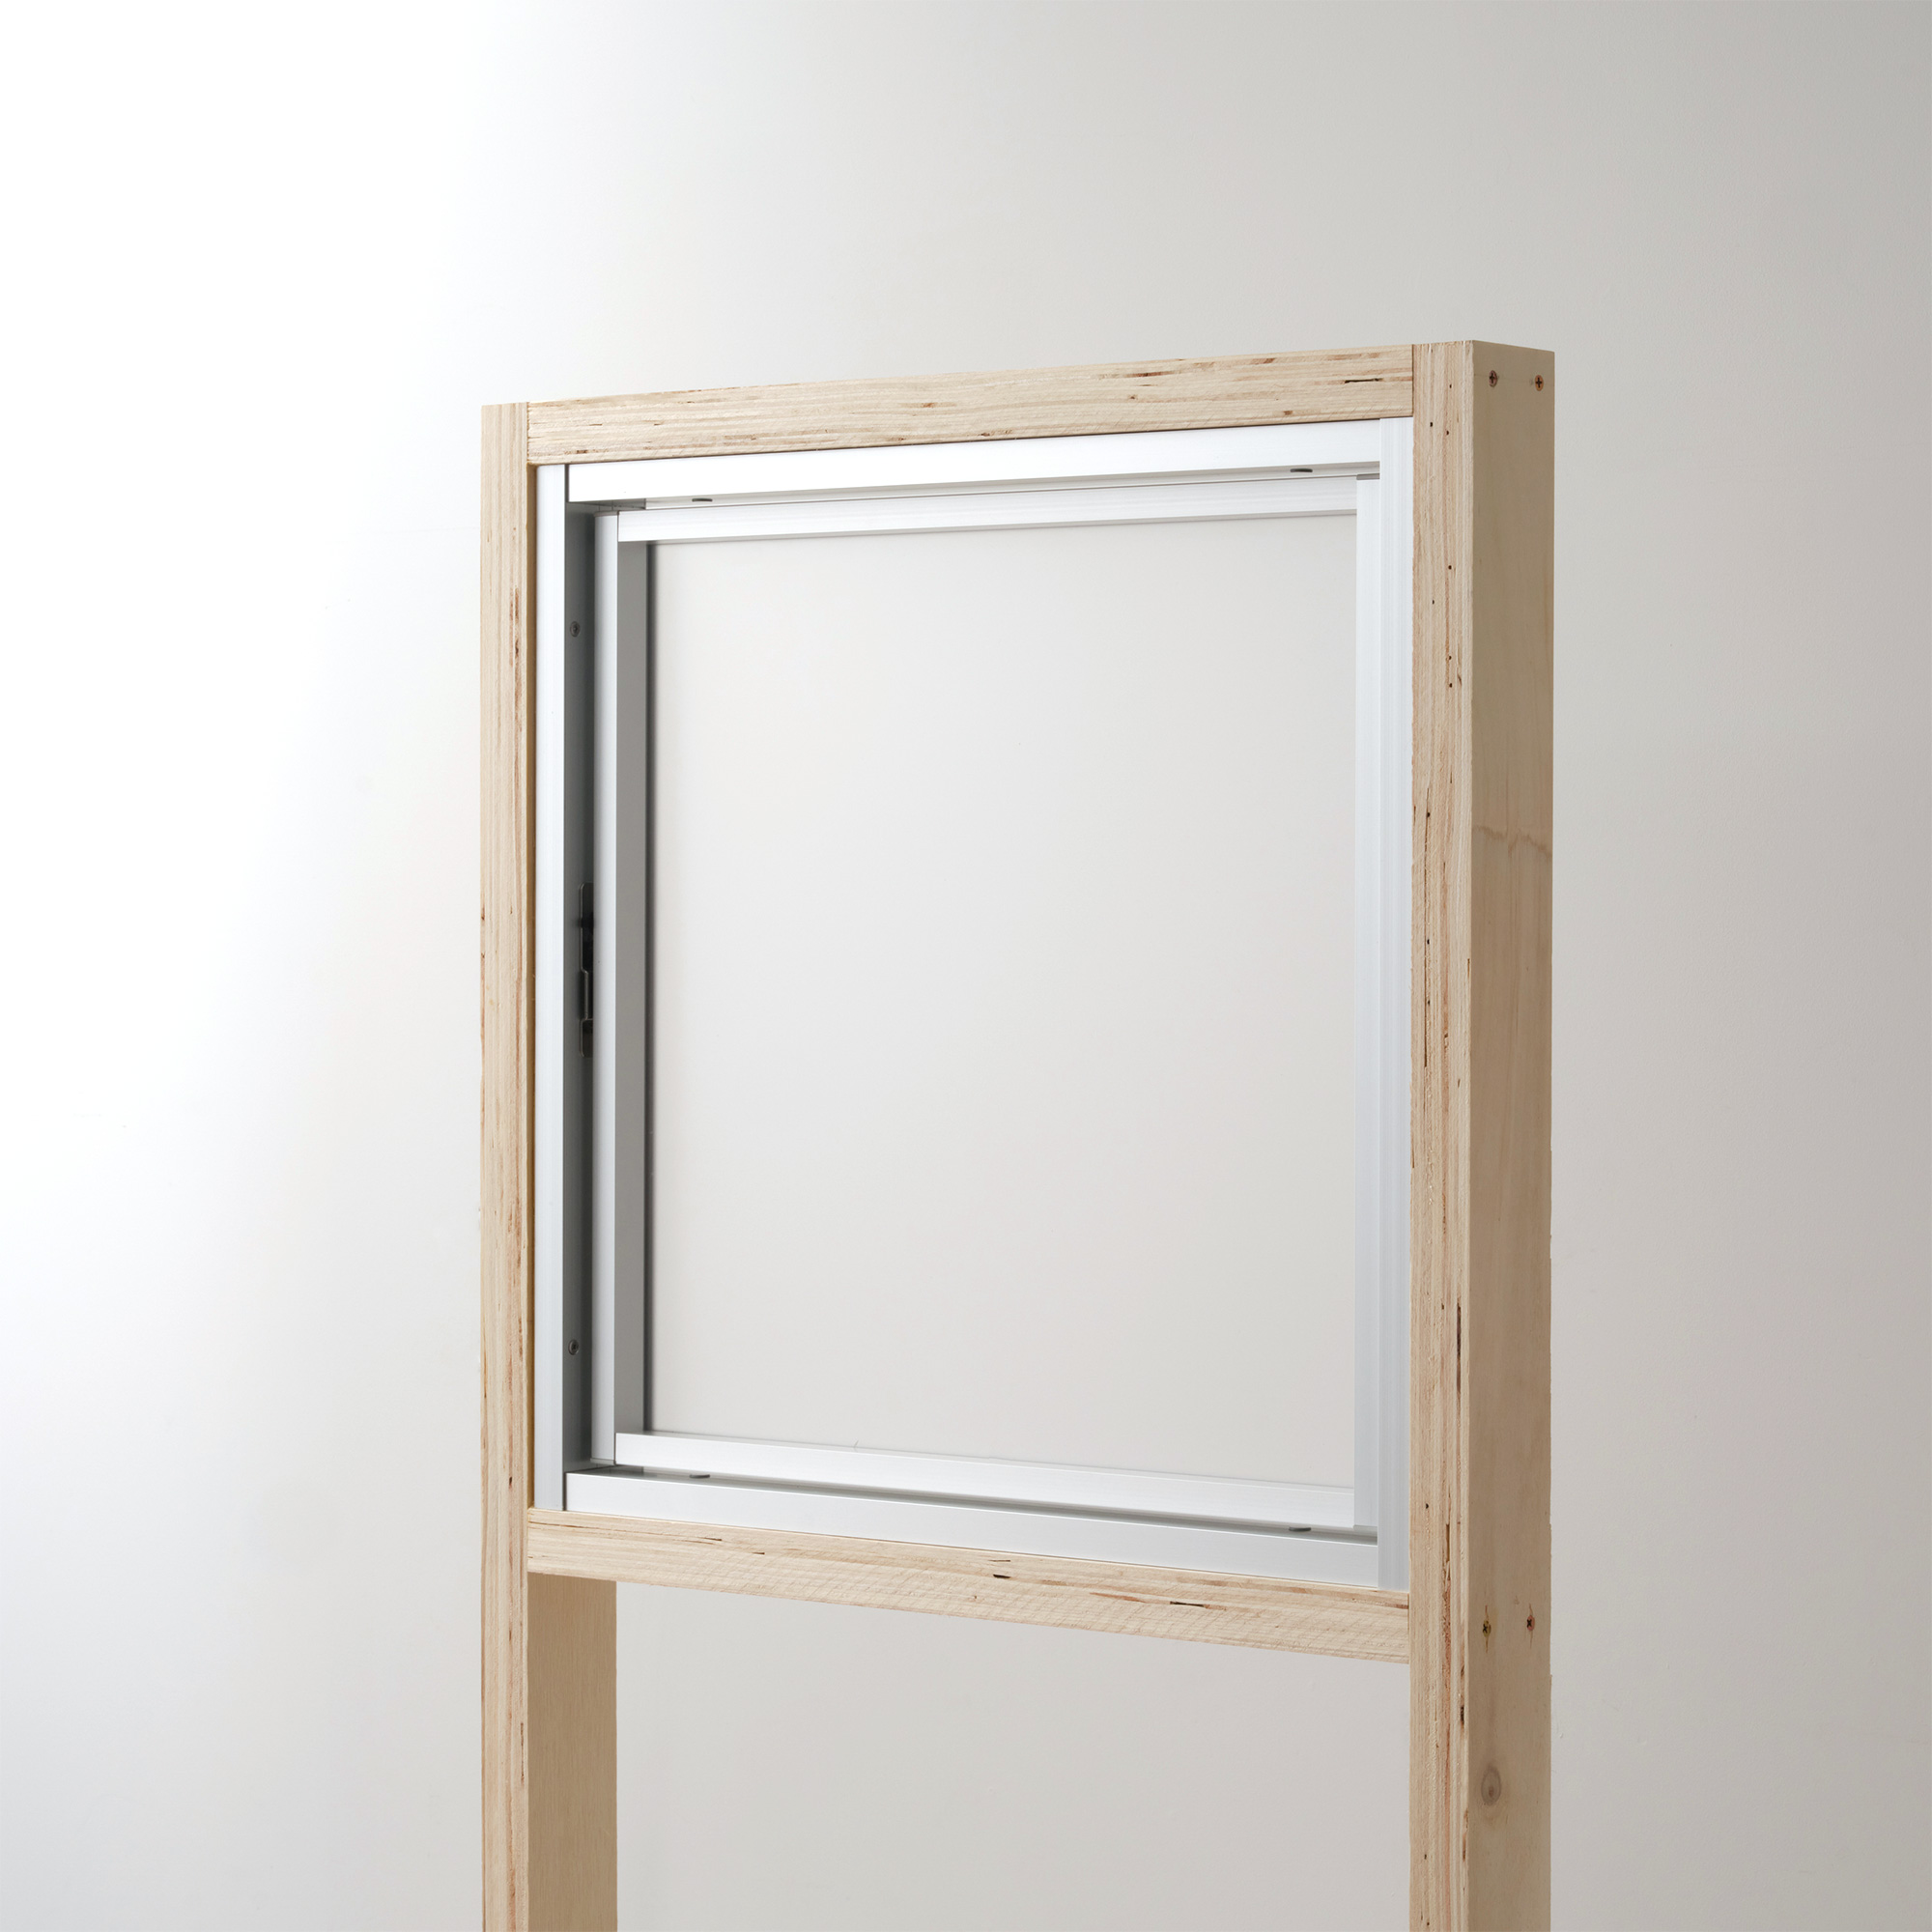 室内アルミサッシ FIX窓＋FIX窓 シルバー ガラス DW-DR013-11-G201 回転窓 W500 H500 マット樹脂パネル